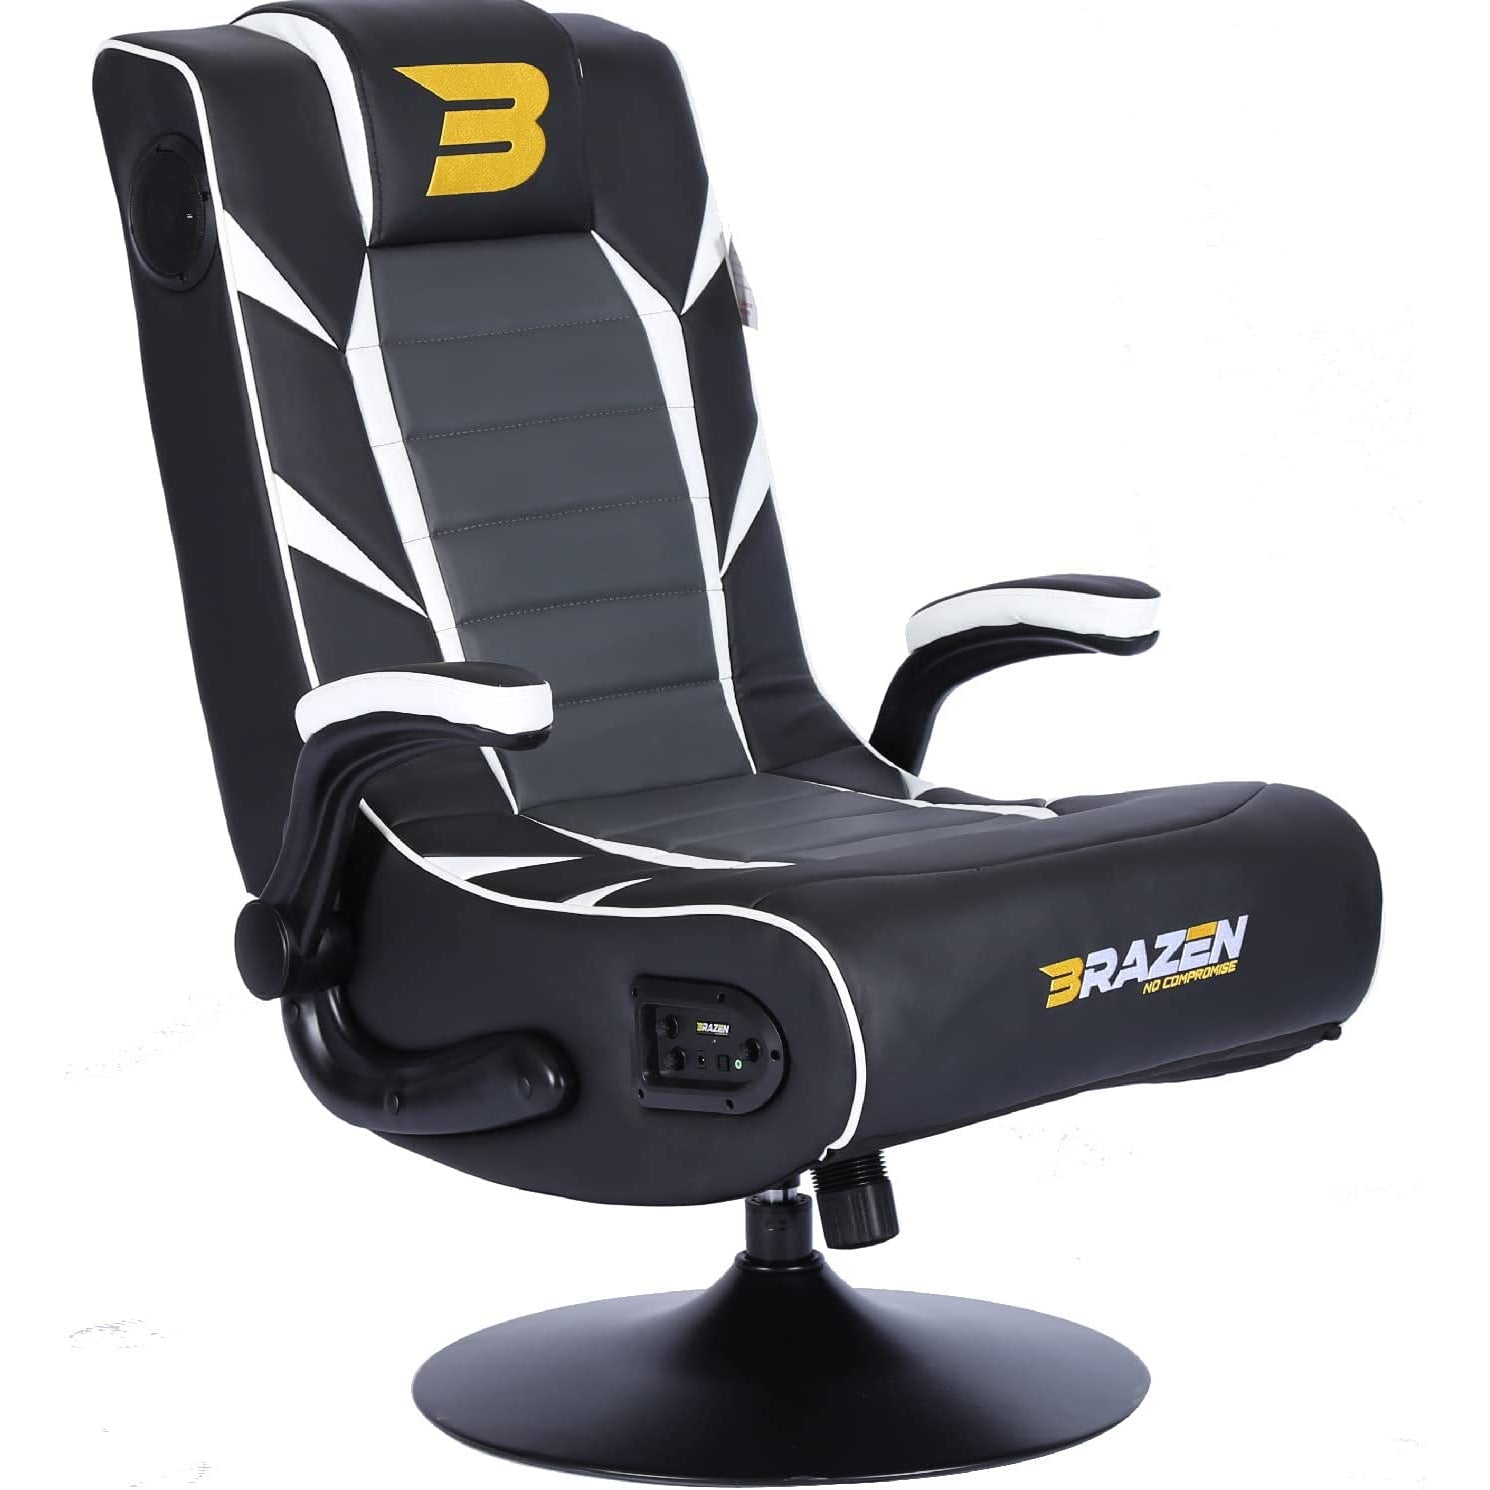 BraZen Panther Elite 2.1 Bluetooth Surround Sound Gaming Chair - Black / White - Refurbished Pristine